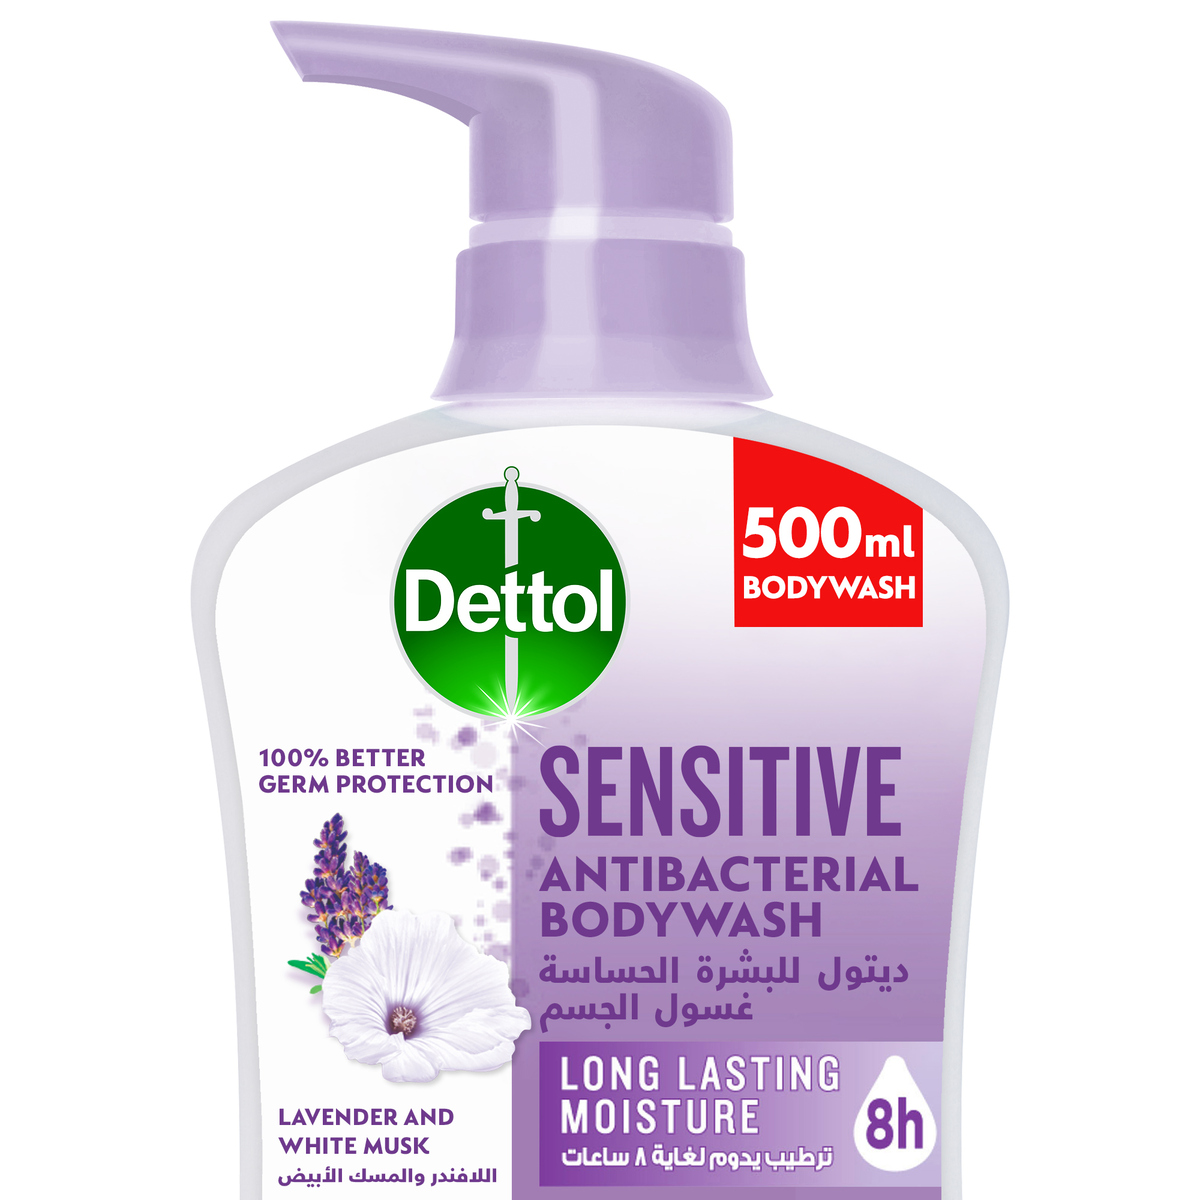 اشتري قم بشراء ديتول غسول الجسم للبشرة الحساسة المضاد للبكتيريا برائحة اللافندر والمسك الأبيض 500 مل Online at Best Price من الموقع - من لولو هايبر ماركت Shower Gel&Body Wash في السعودية